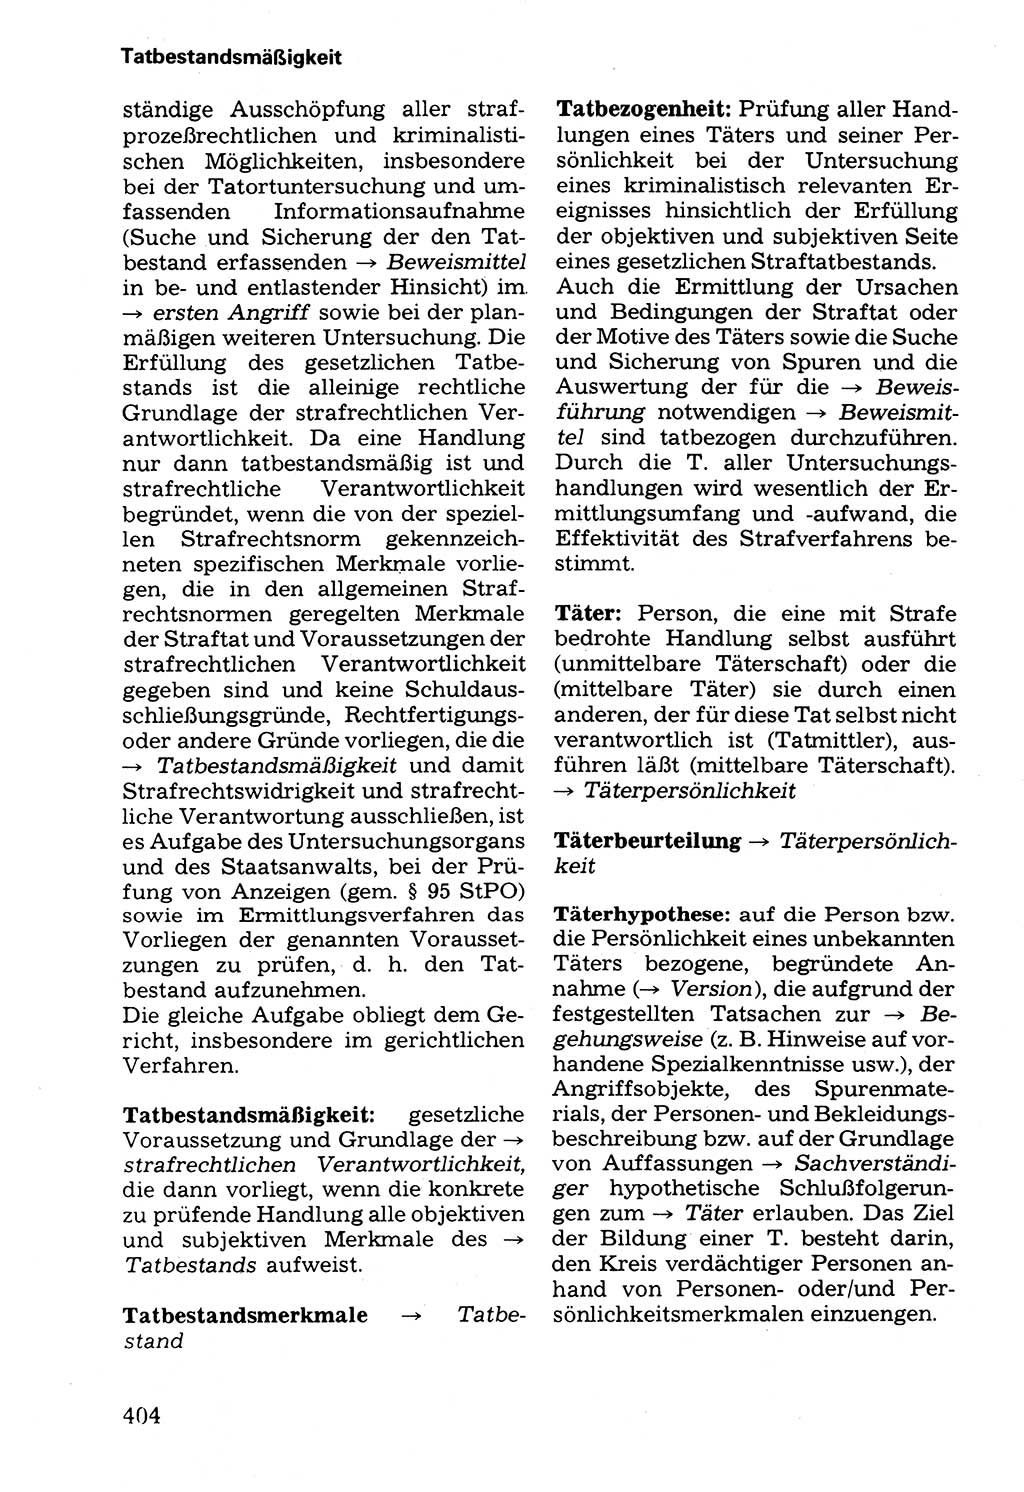 Wörterbuch der sozialistischen Kriminalistik [Deutsche Demokratische Republik (DDR)] 1981, Seite 404 (Wb. soz. Krim. DDR 1981, S. 404)